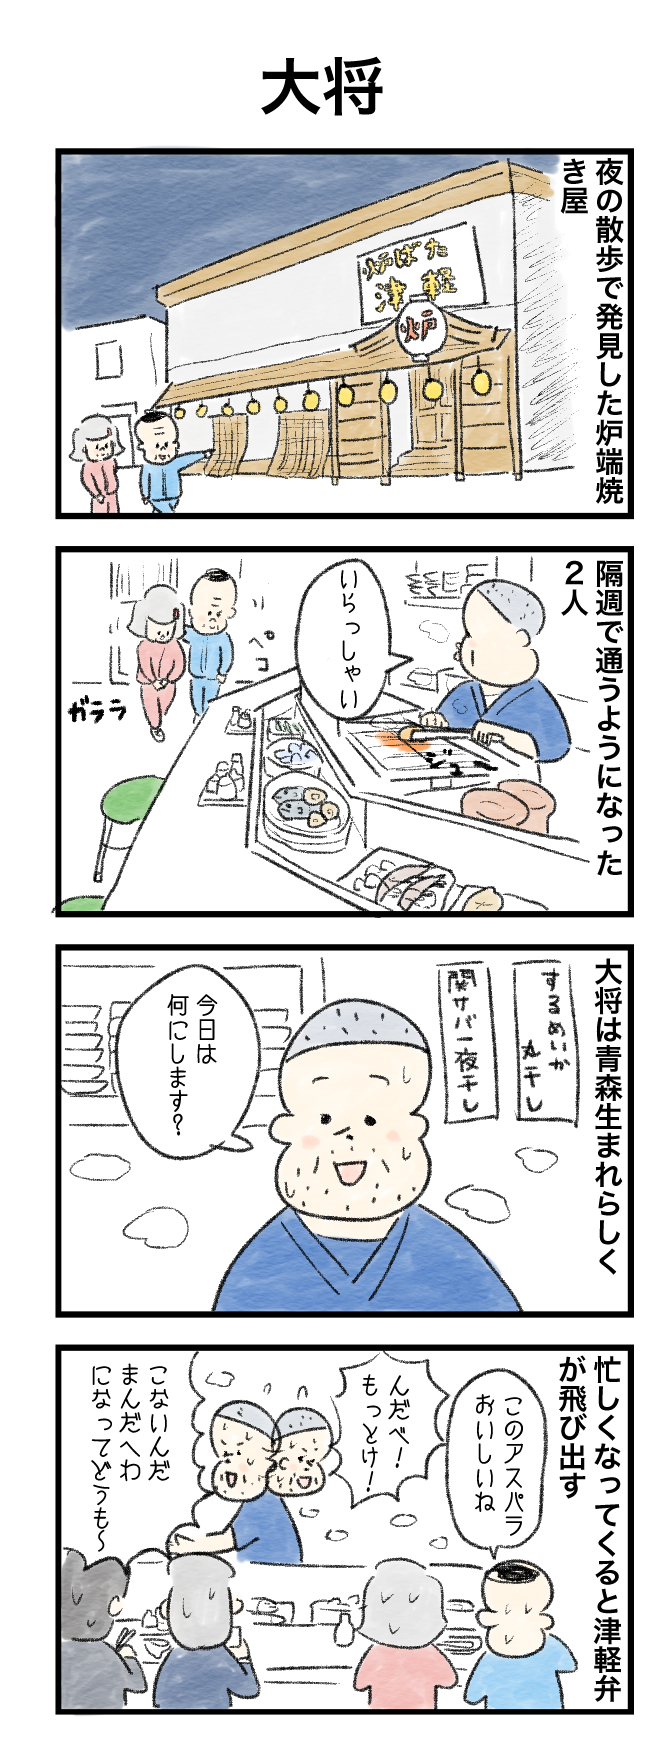 今日の泉谷さん【22】 作：カワサキヒロシ（ごとお日漫画）